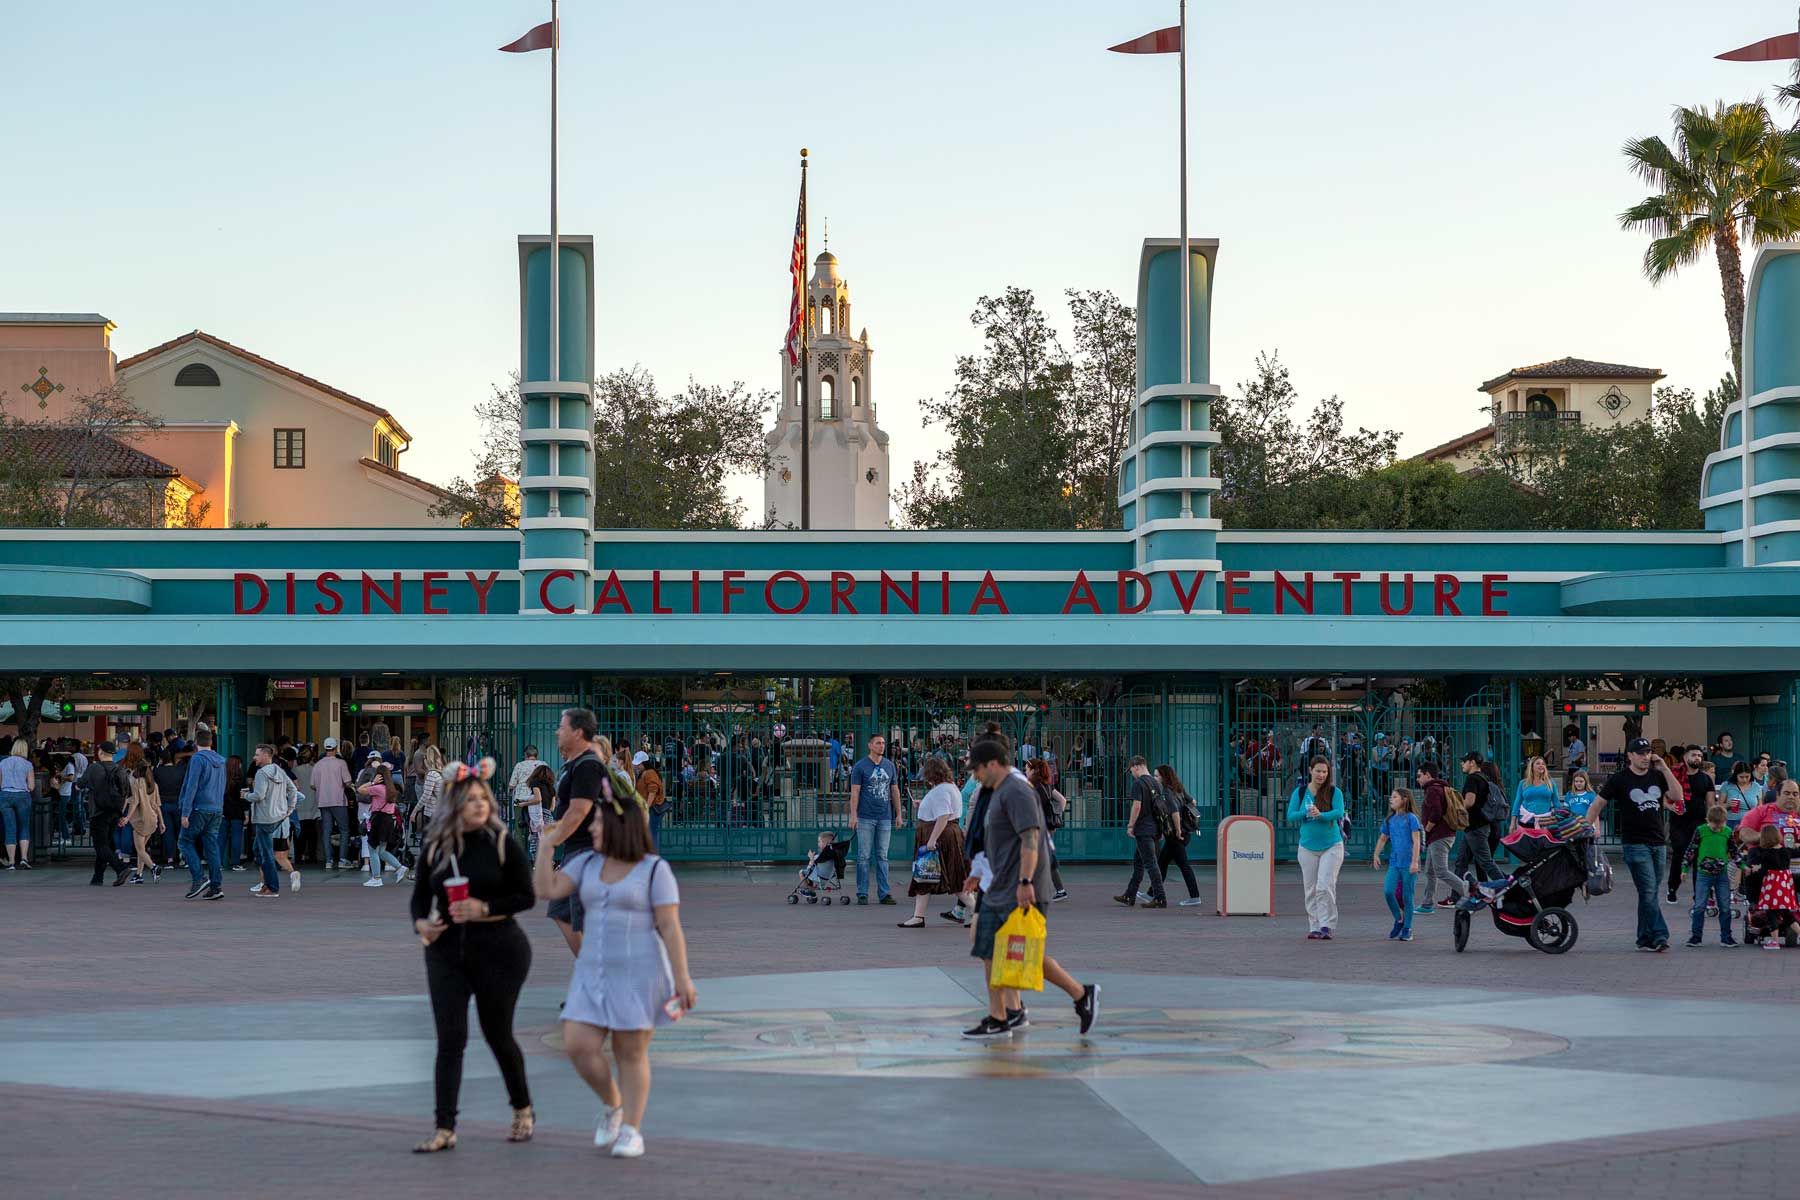 Besucher besuchen den Themenpark Disney California Adventure am 25. Februar 2020 in Anaheim, Kalifornien. Bob Iger, der seit 2005 CEO von Disney war, wird durch Bob Chapek ersetzt, der das Unternehmen zuvor leitete